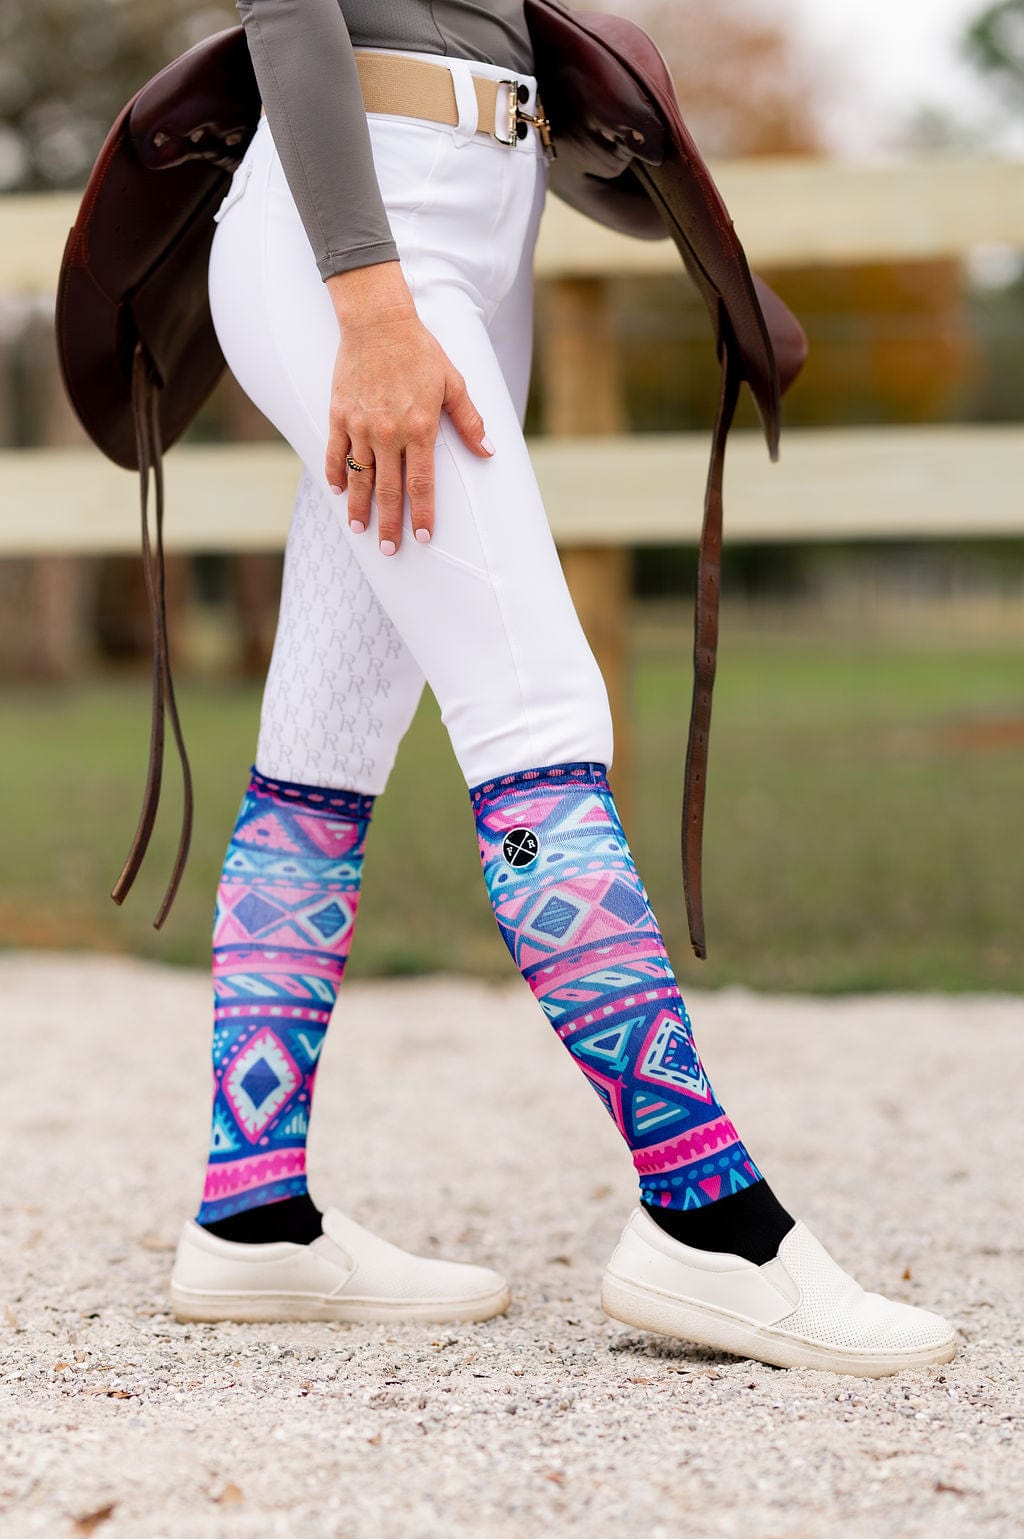 Boot Socks for Women